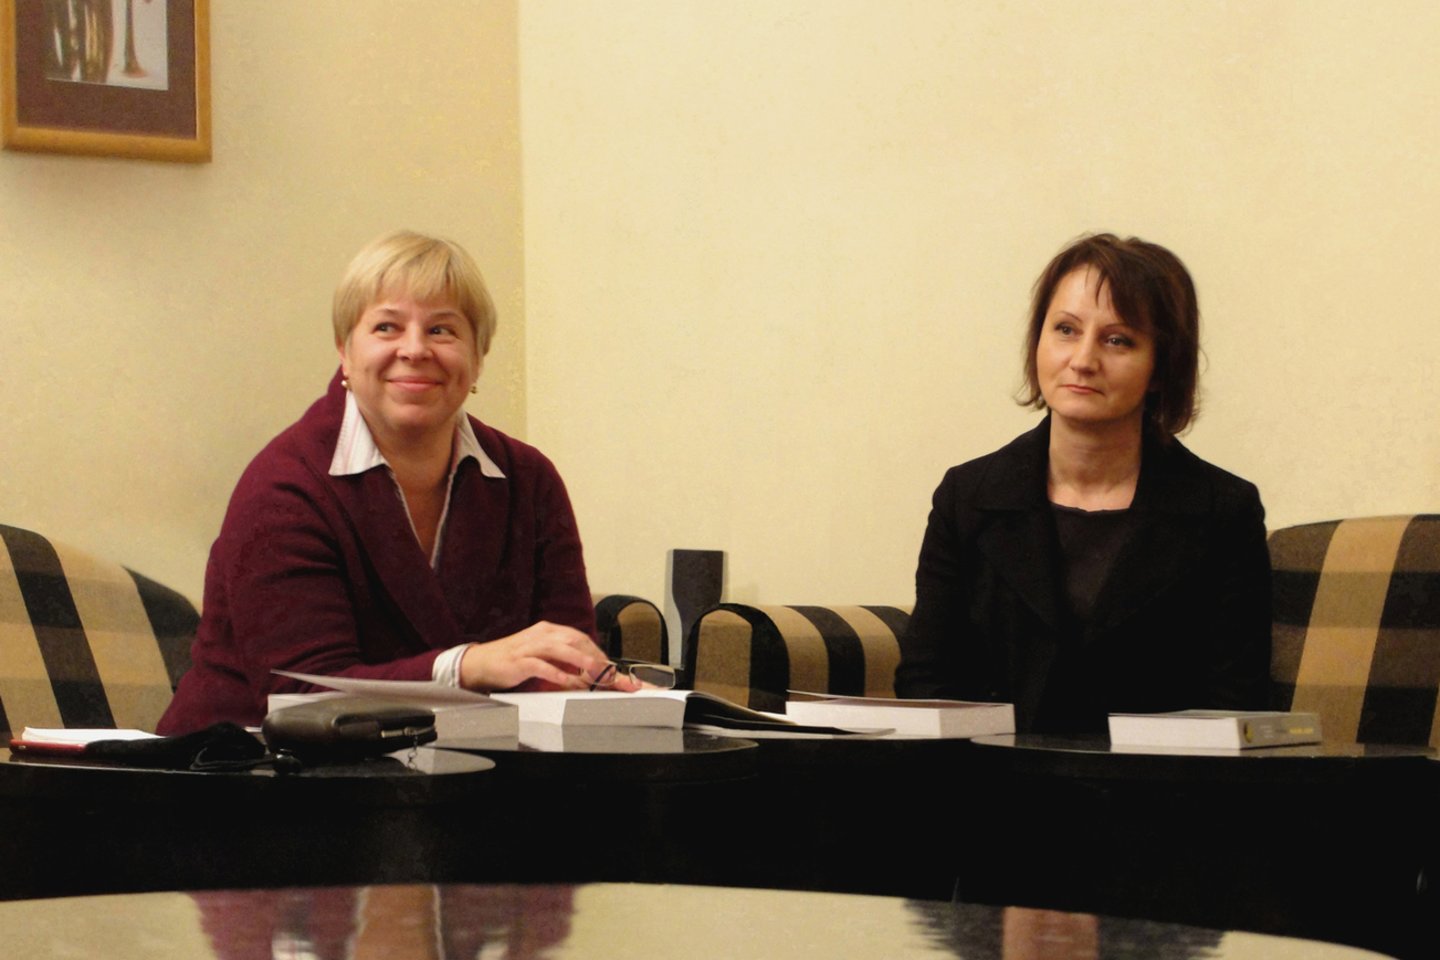  R.Stanevičiūtė-Kelmickienė knygos „Gaidos obertonai“ pristatyme Lietuvos nacionalinėje filharmonijoje su prof. G.Daunoravičiene (kairėje), 2010 m.